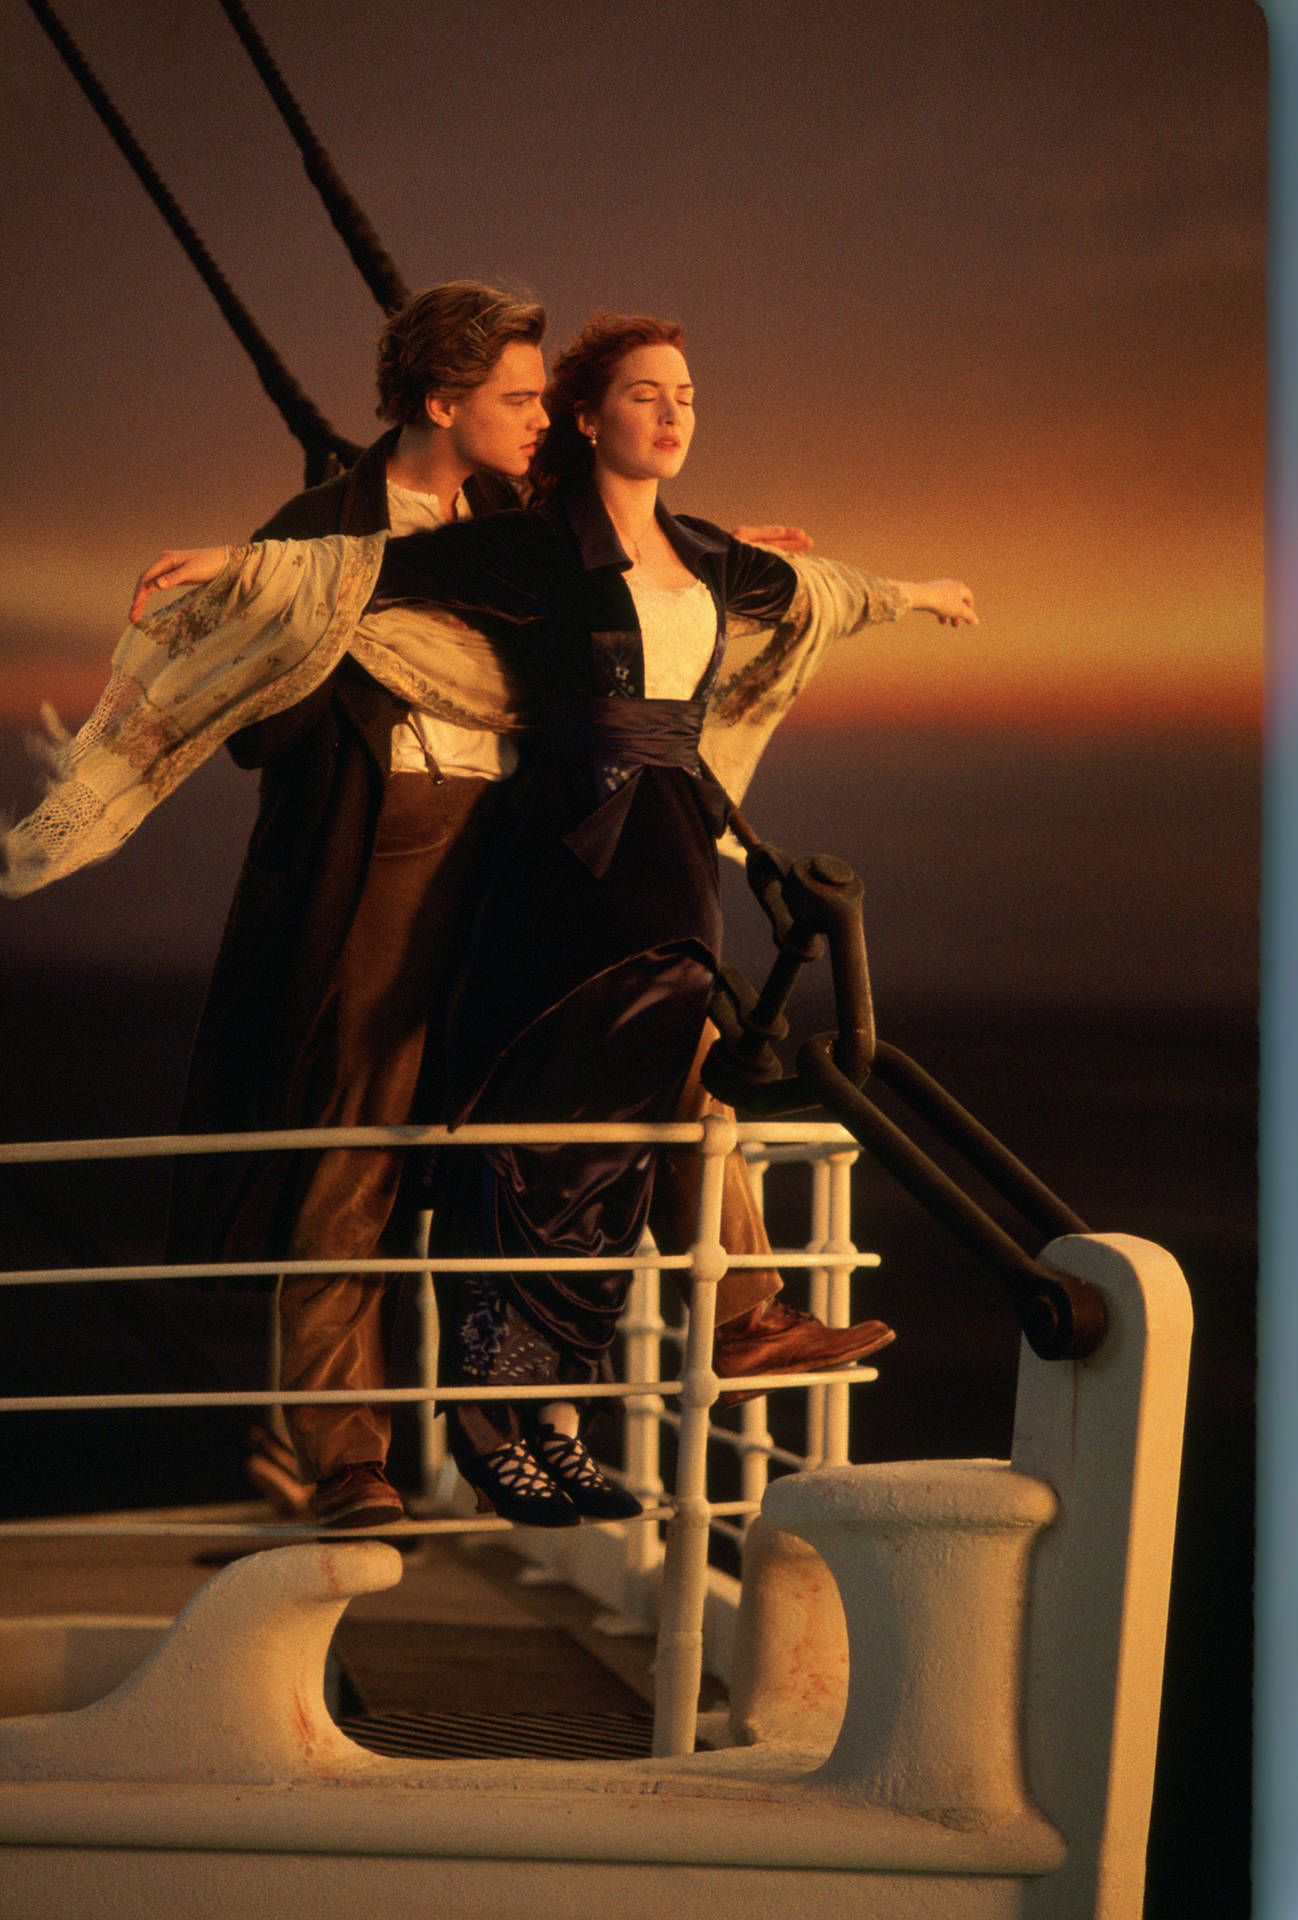 Titanic Hug Scene Background